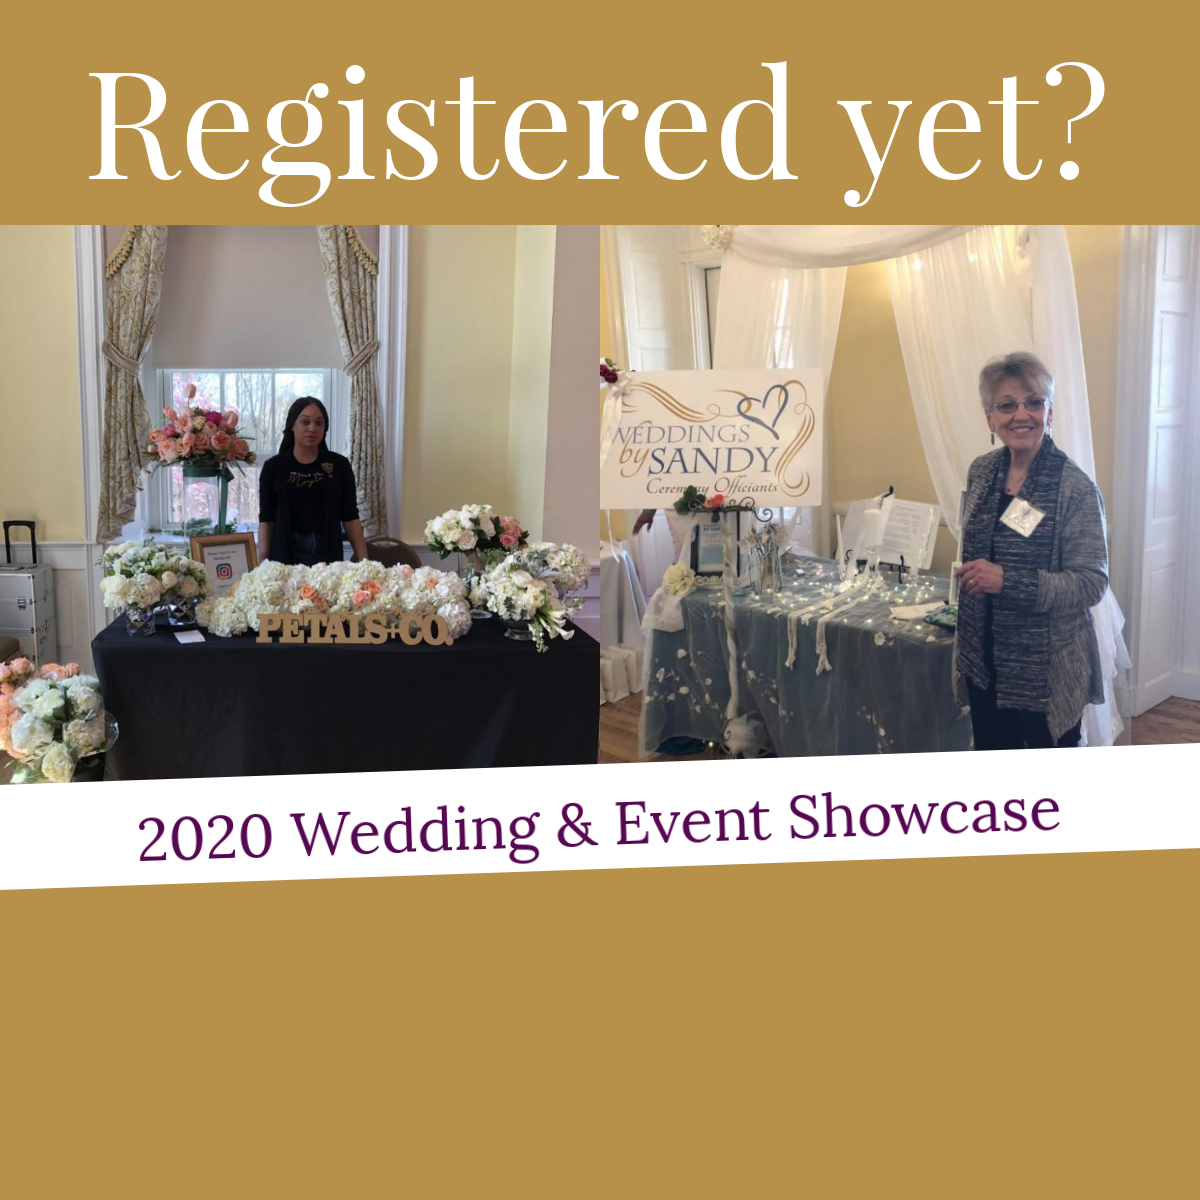 2020 Wedding & Event Showcase - Vendor Registration